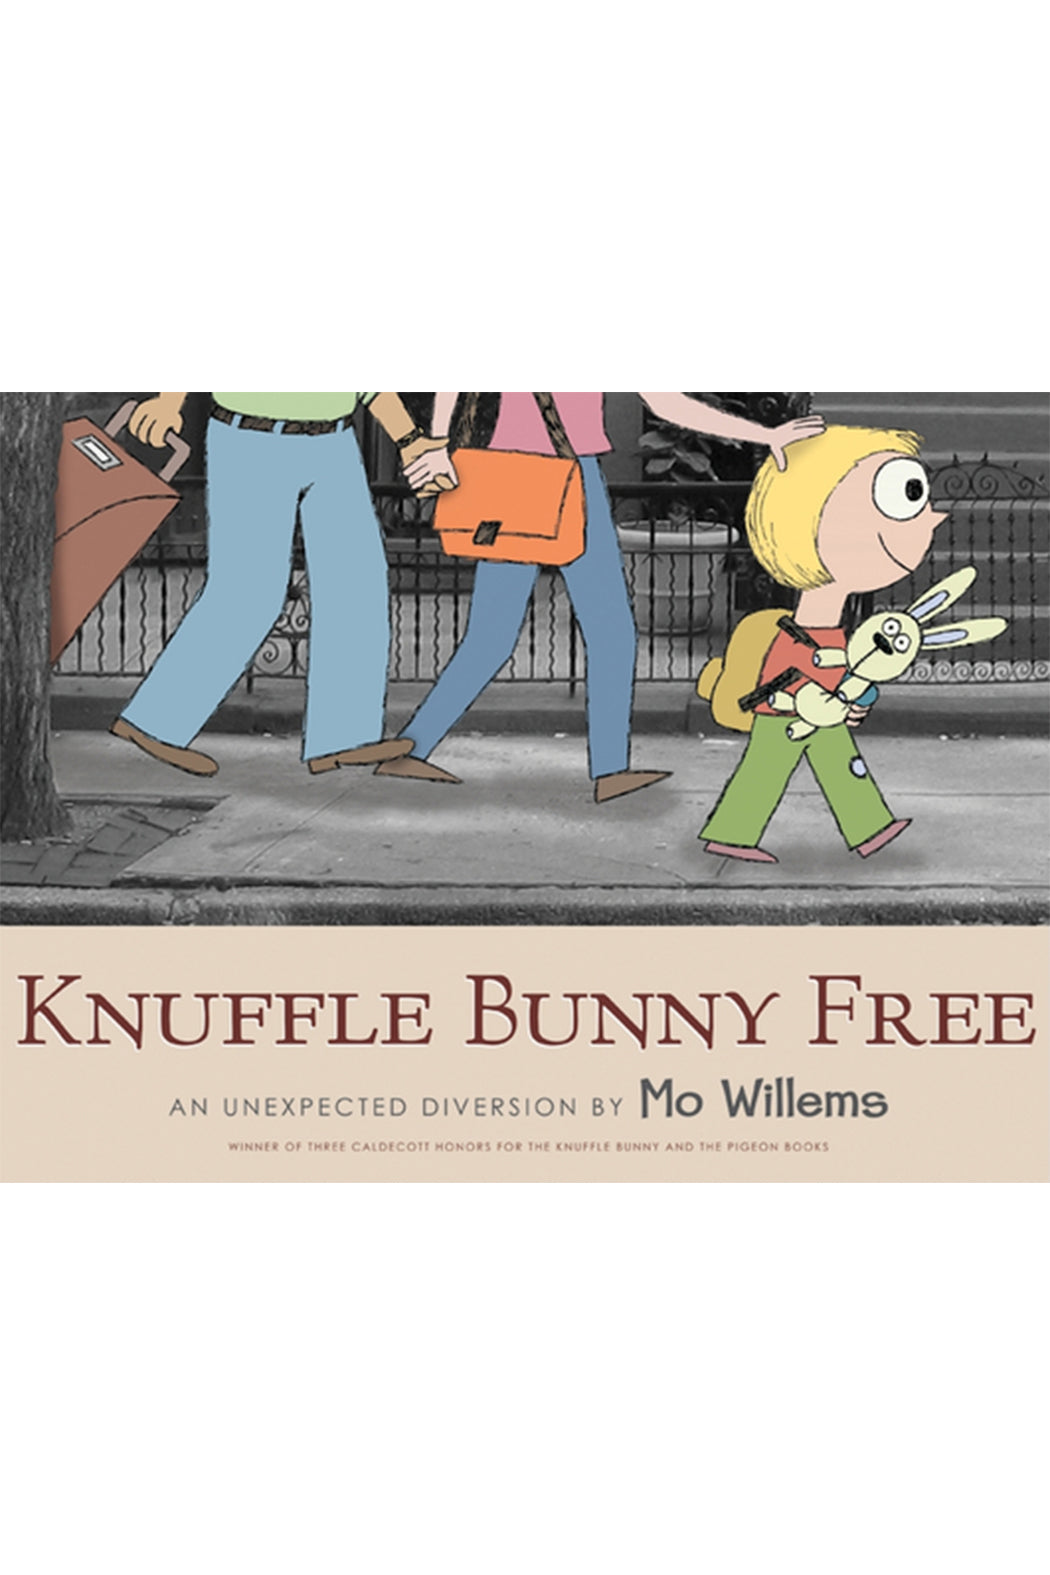 Knuffle Bunny Free